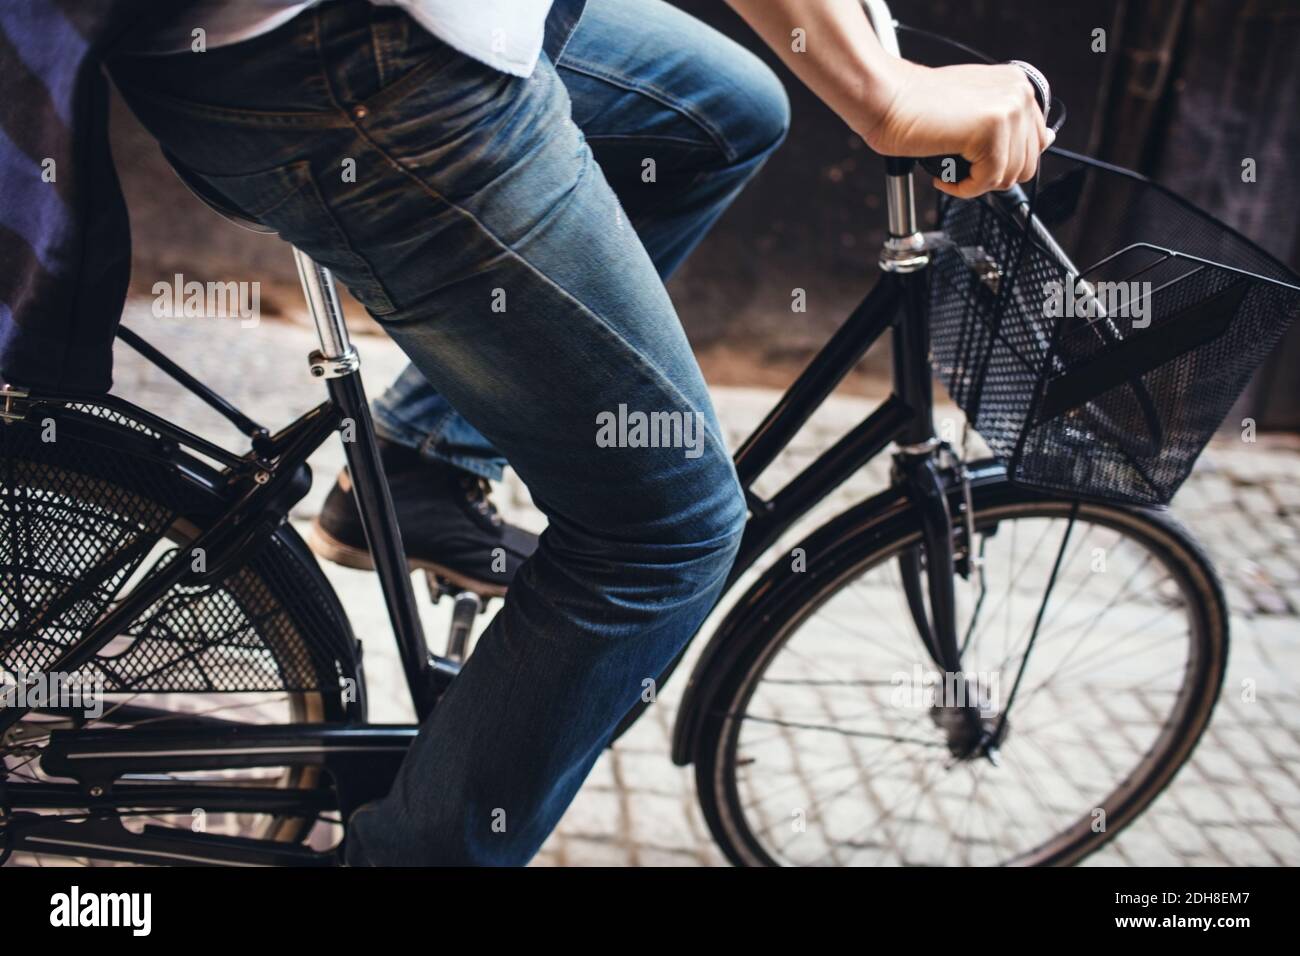 Mittelteil von Mann Radfahren auf gepflasterten Straße Stockfoto